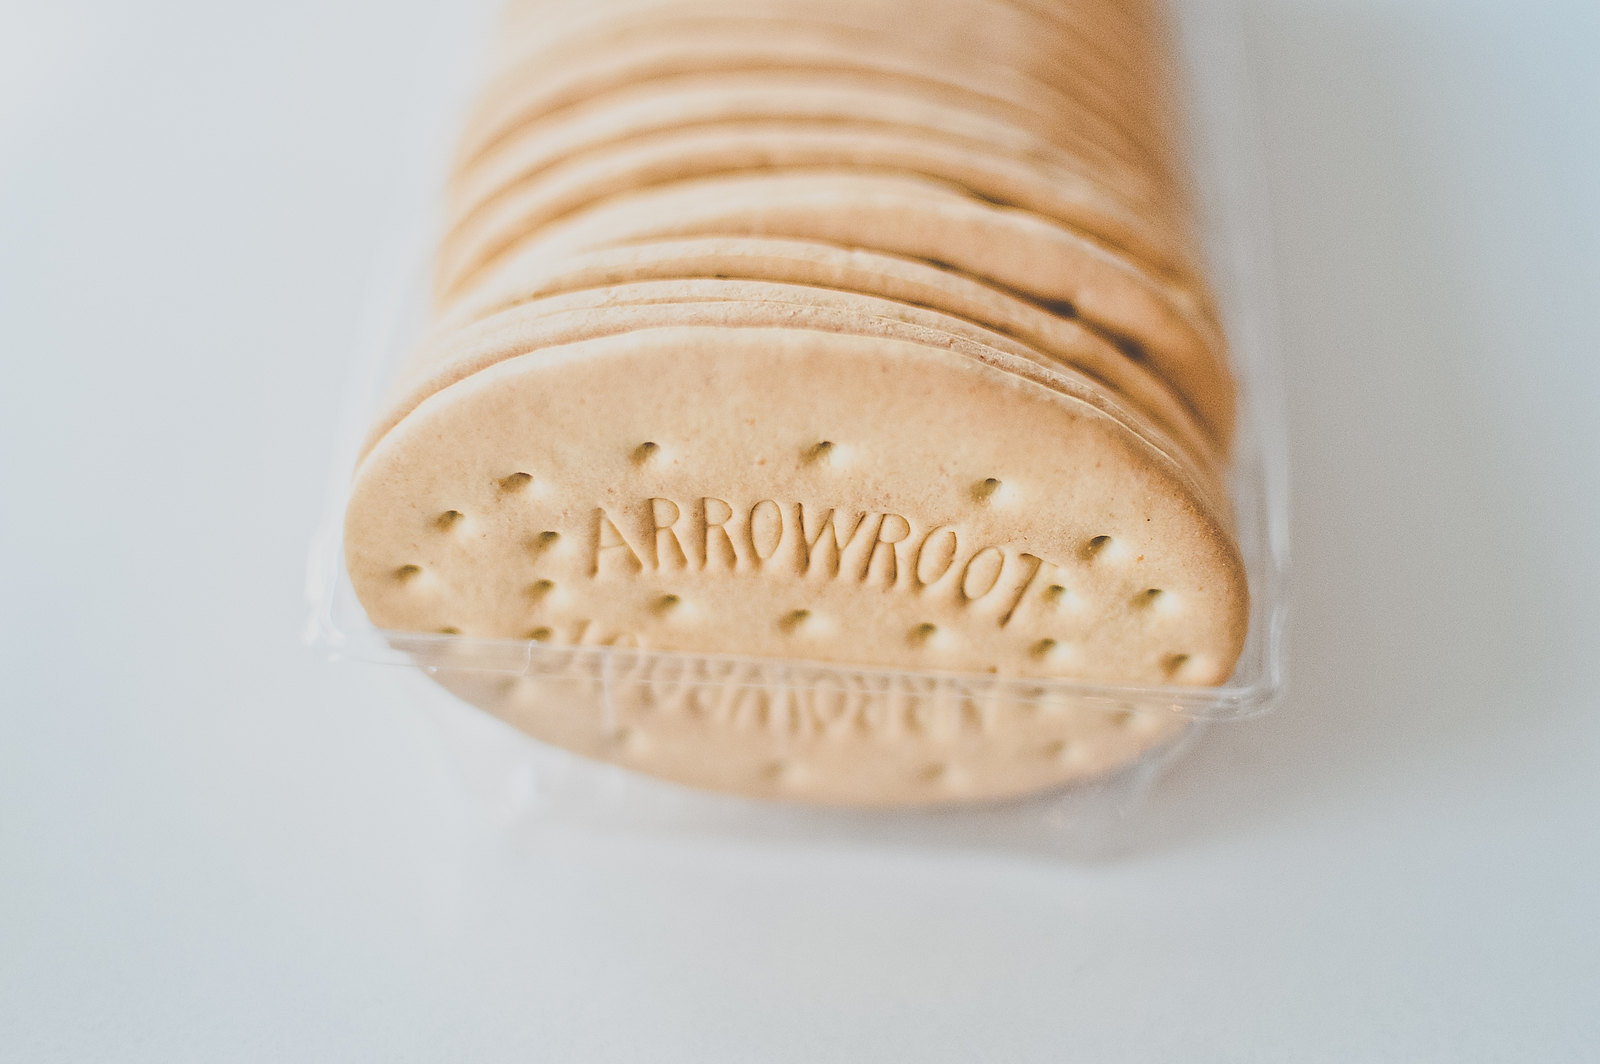 Arrowroot Biscuits